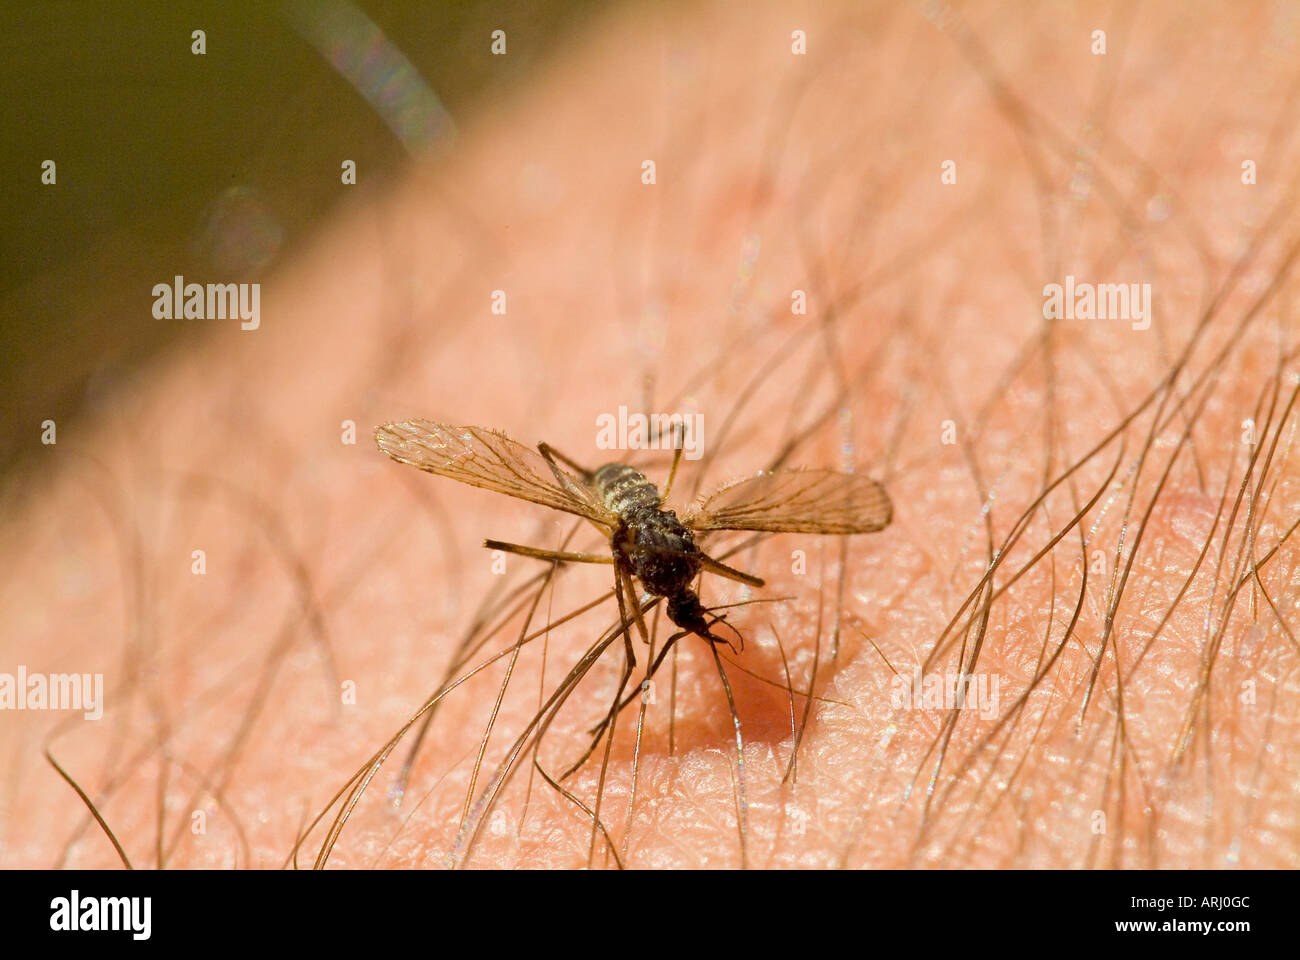 Stechmücke auf der Haut mosquito gnat on human skin Stock Photo